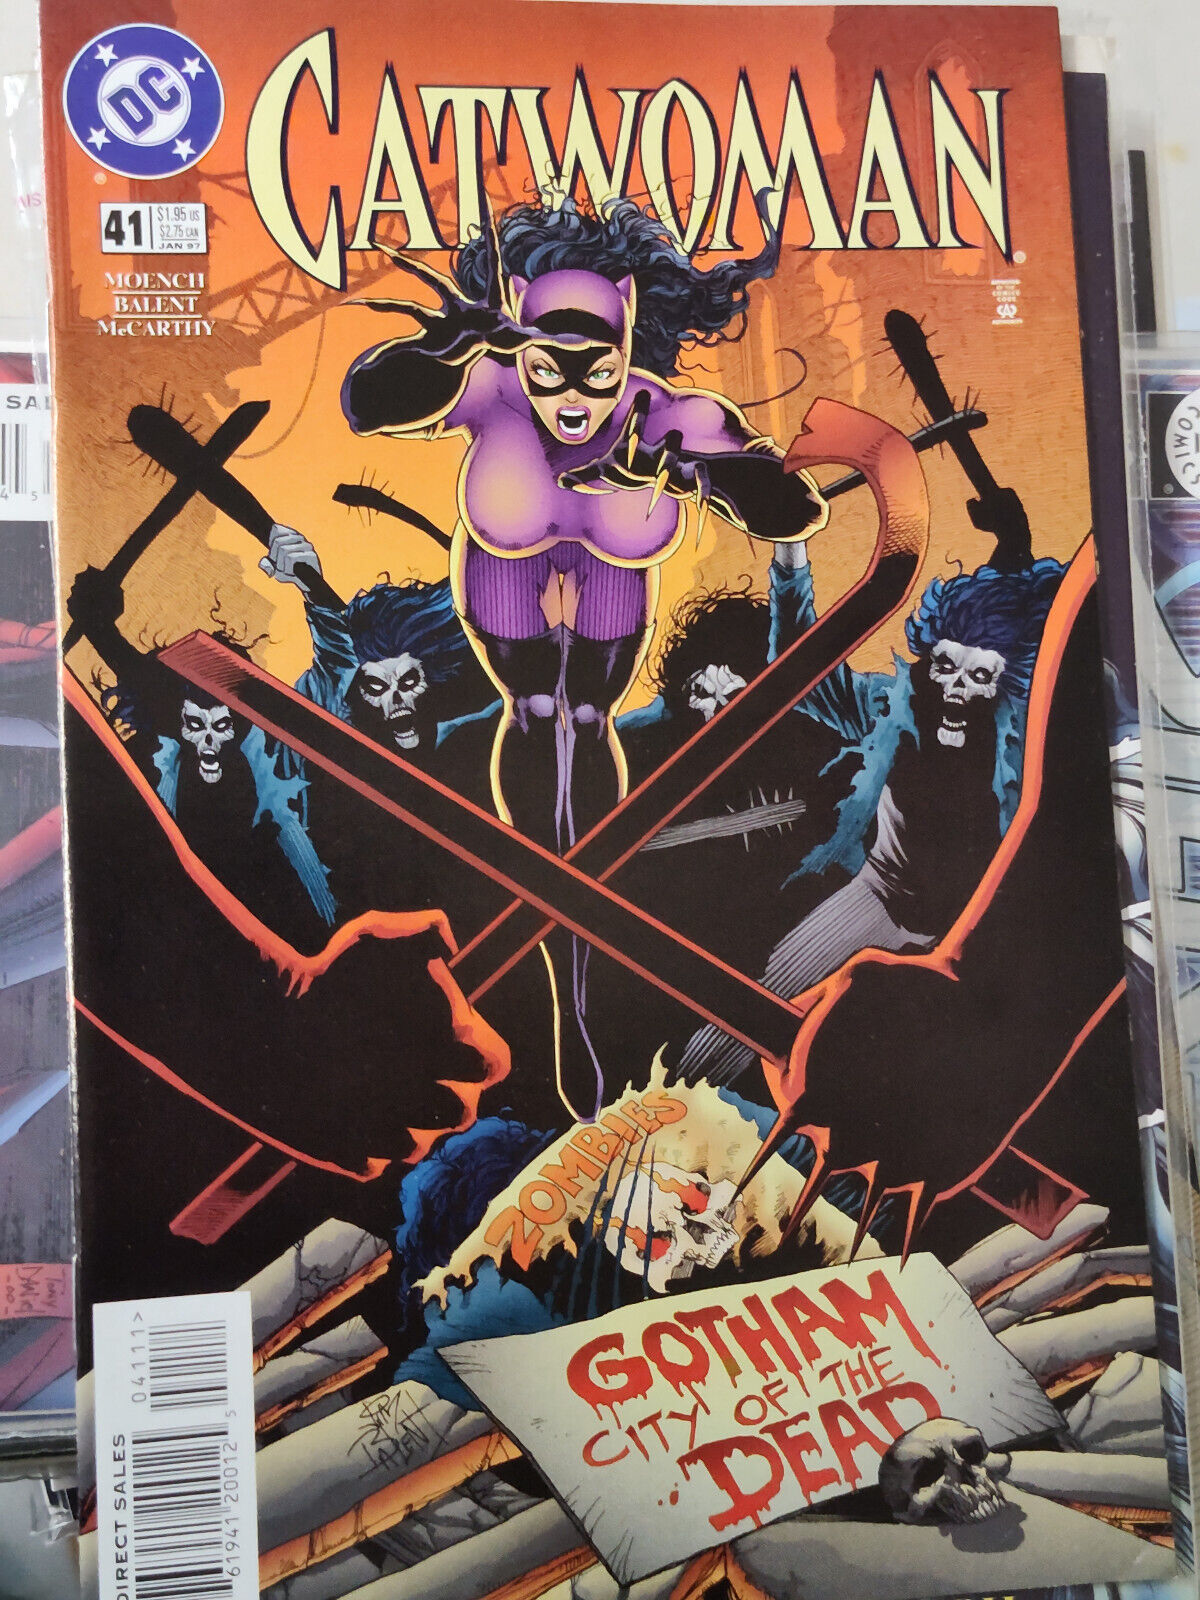 Catwoman comics (Issues 41, 43-47)